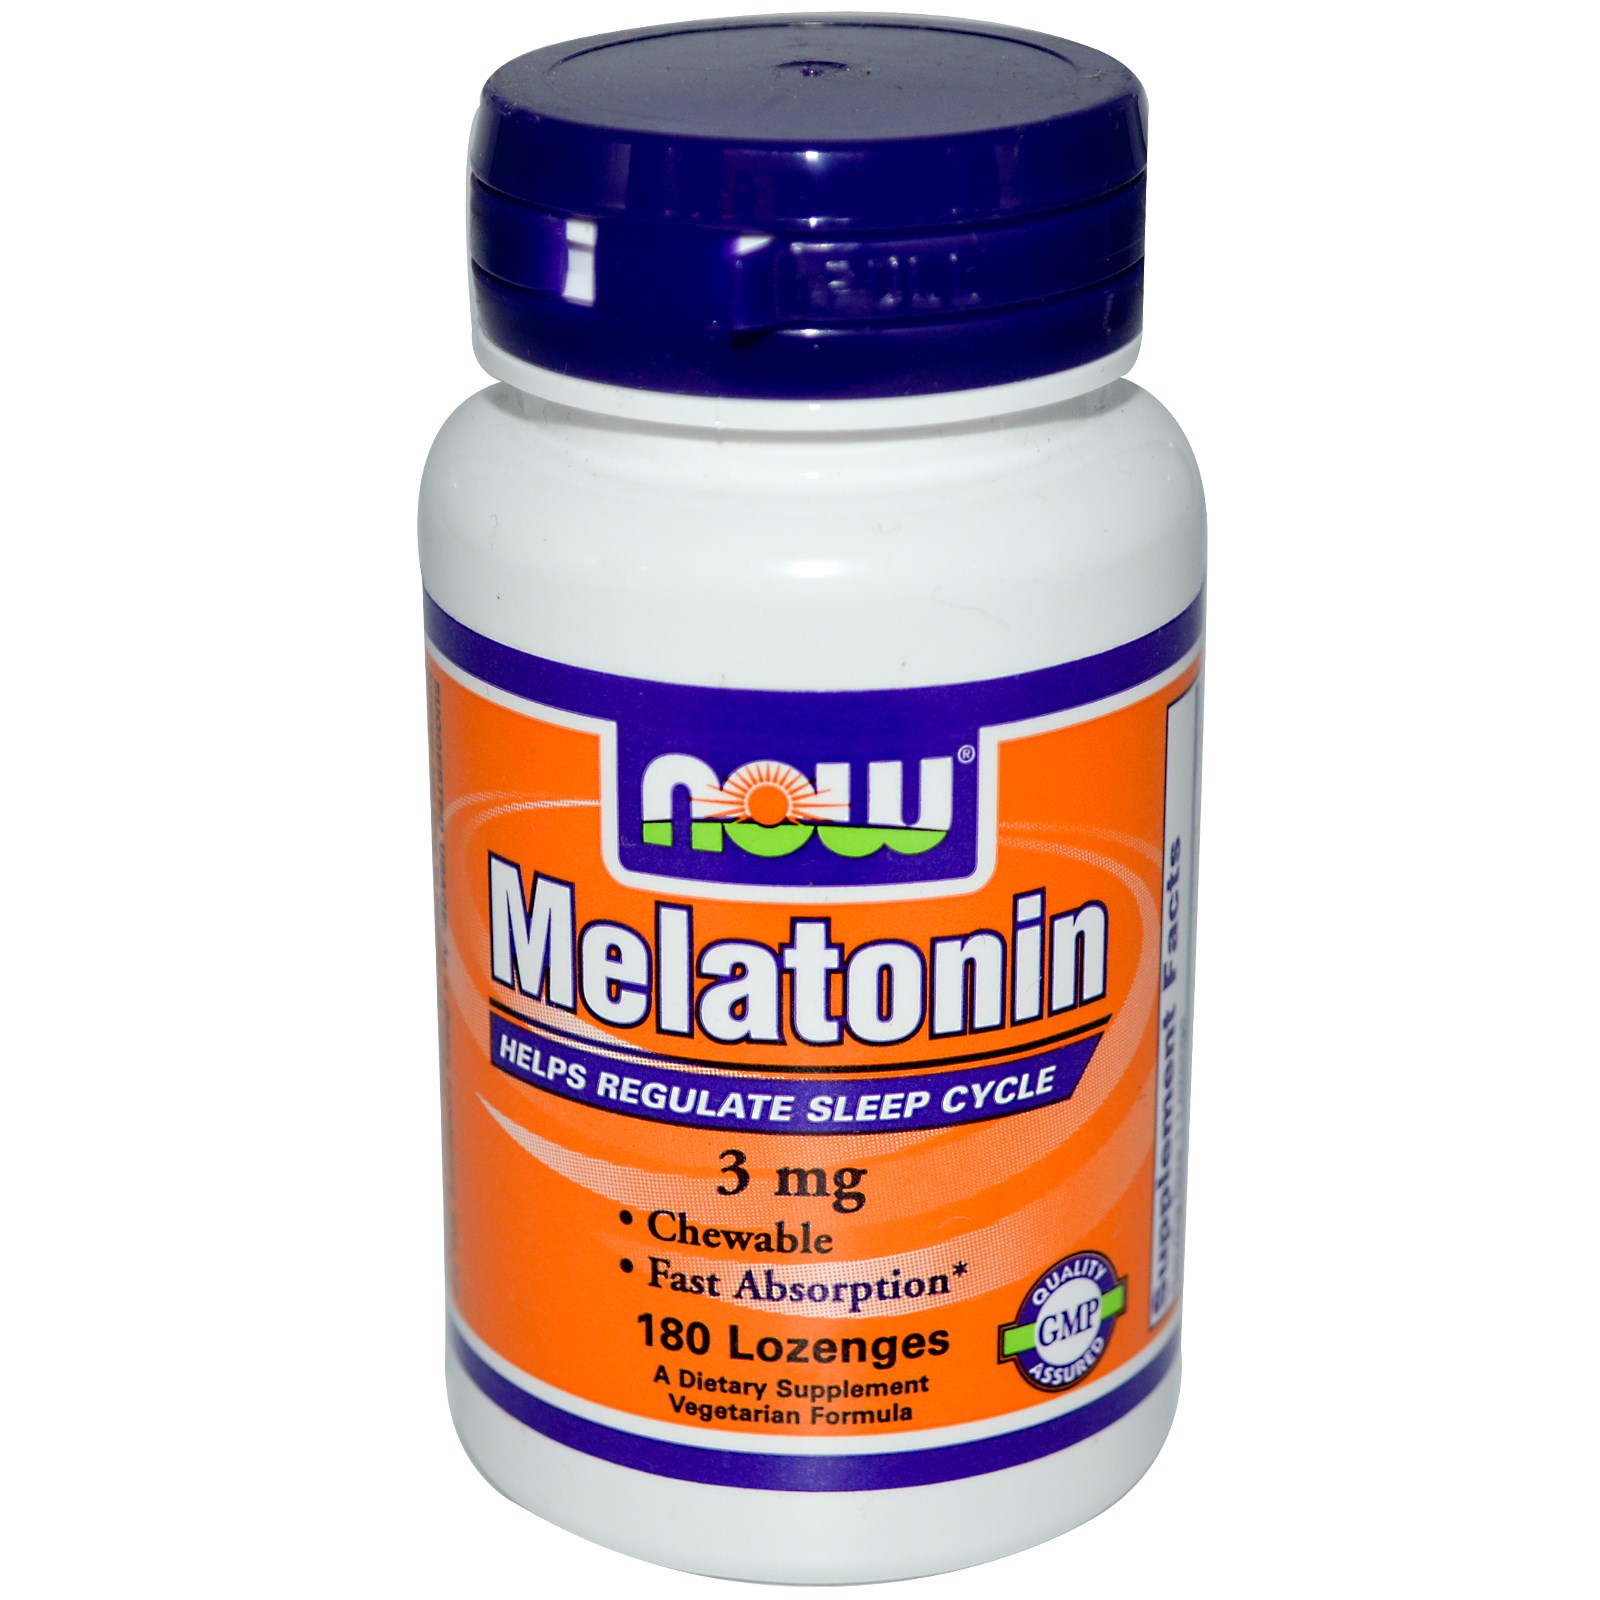 Польза мелатонина в таблетках